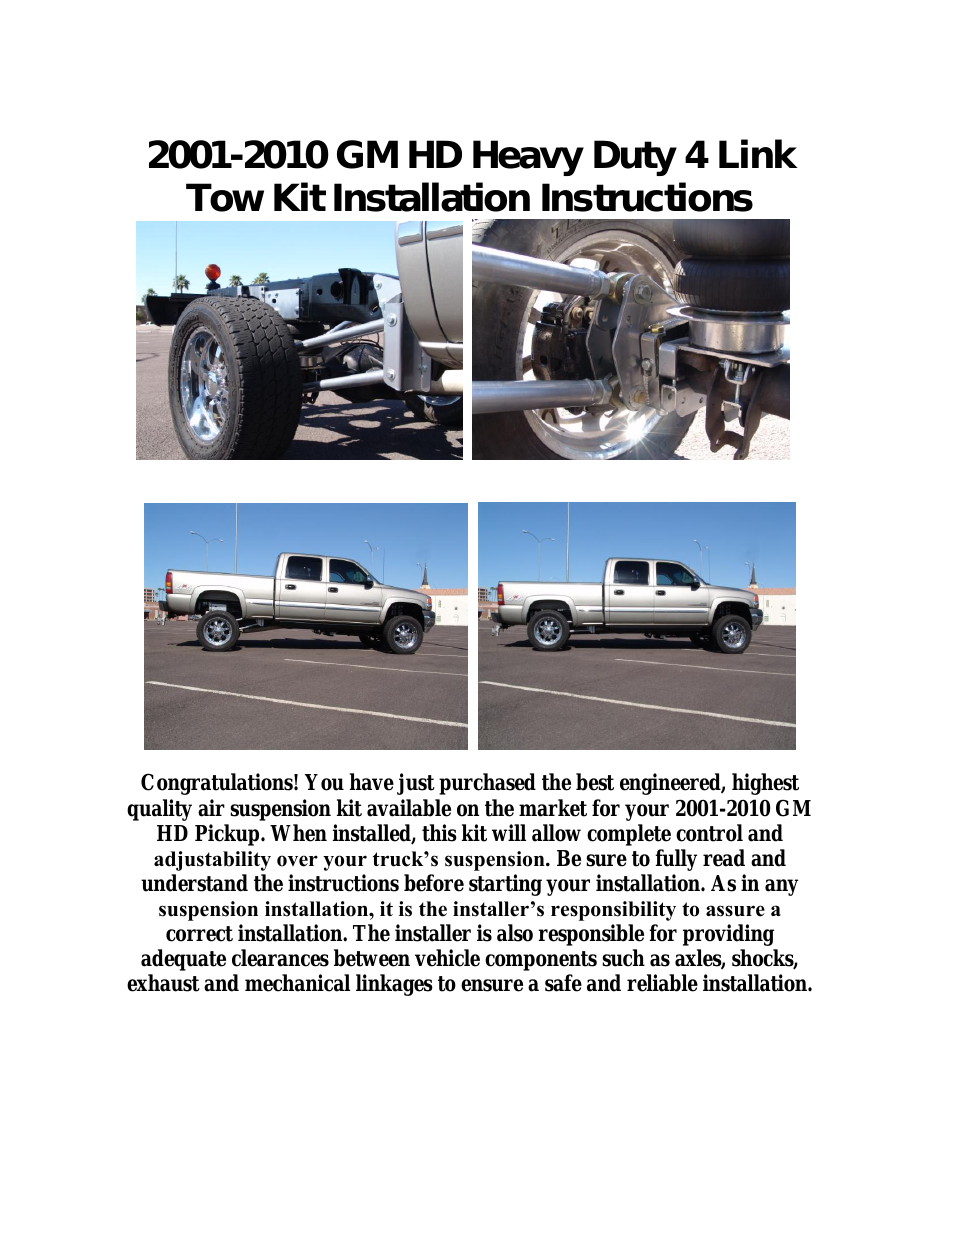 Tow Kit 2001-2010 GM HD Heavy Duty 4 Link